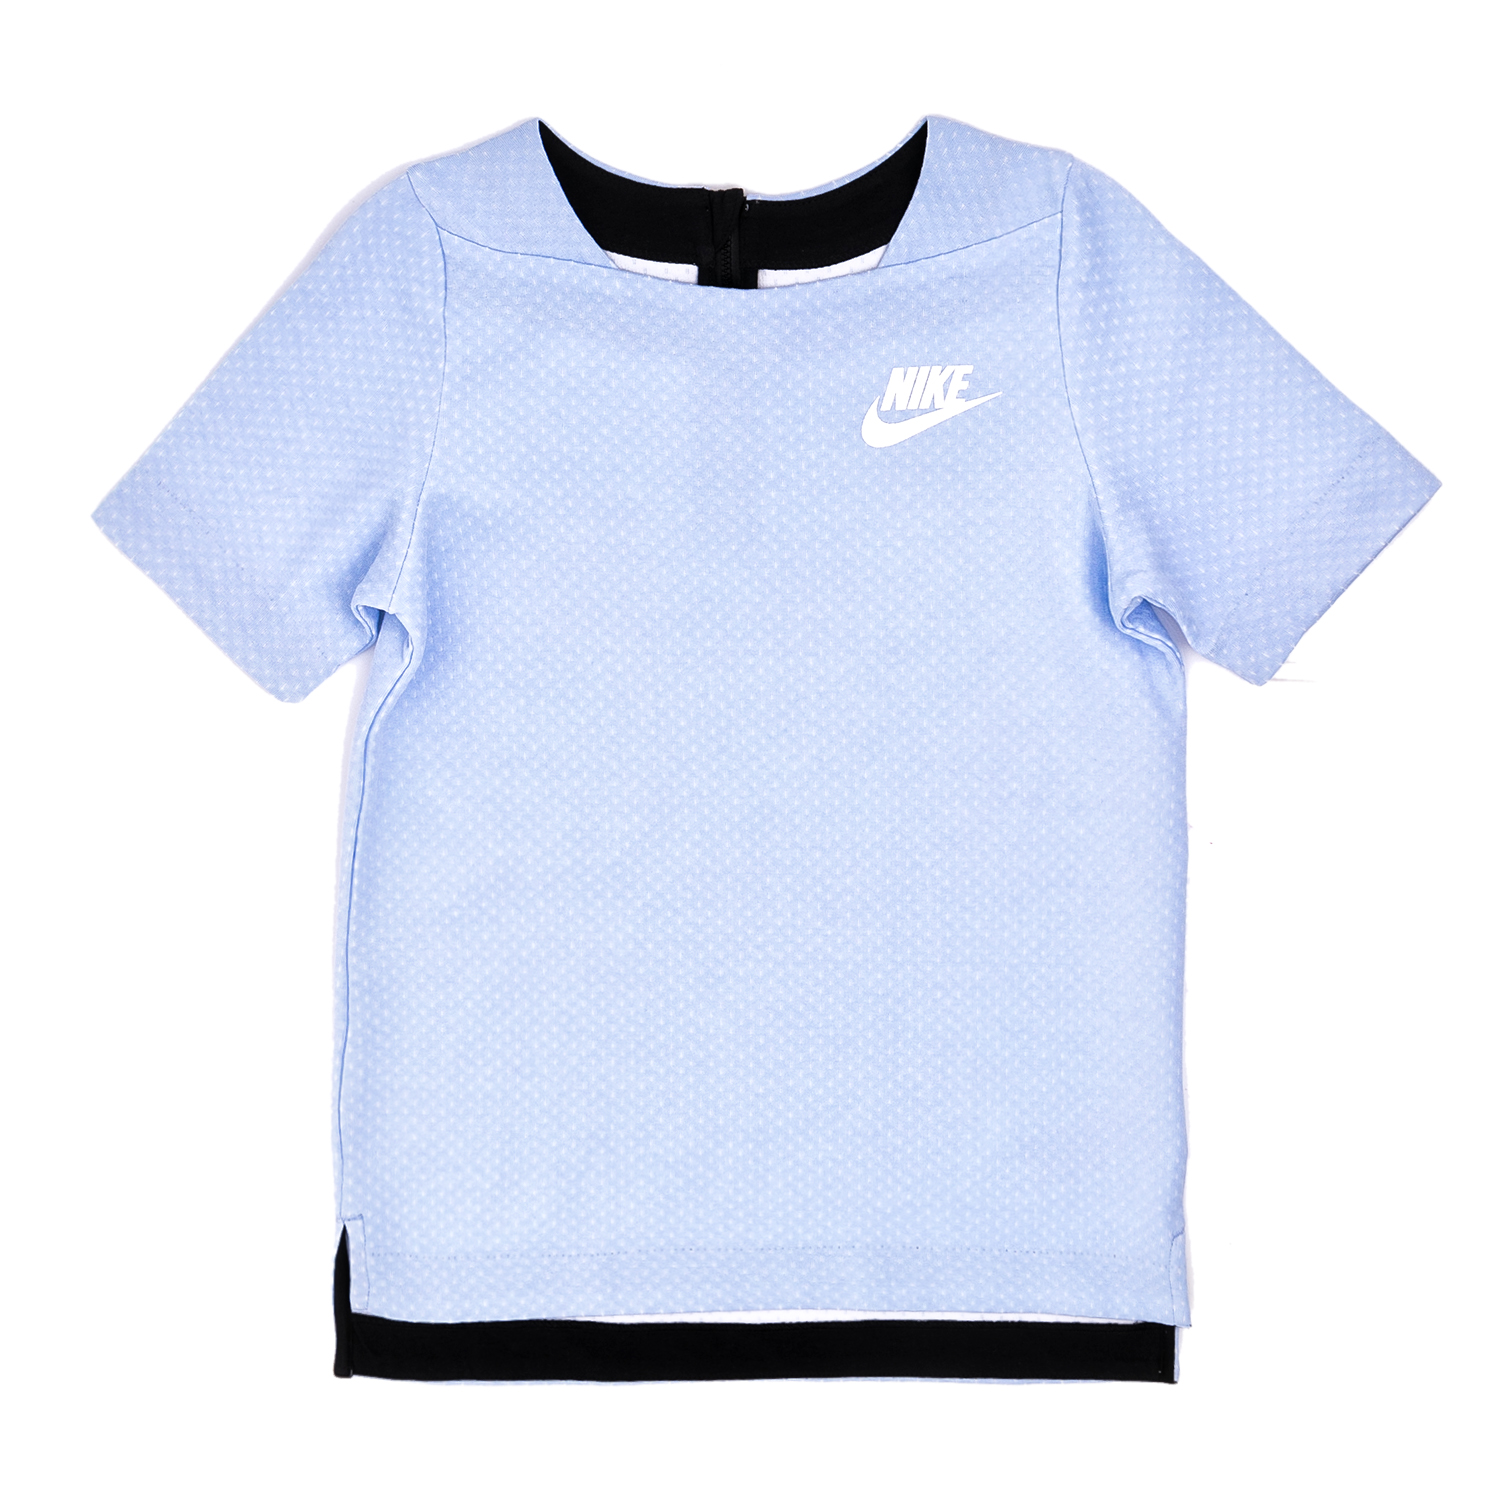 Παιδικά/Girls/Ρούχα/Αθλητικά NIKE - Κοριτσίστικη κοντομάνικη μπλούζα Nike γαλάζια